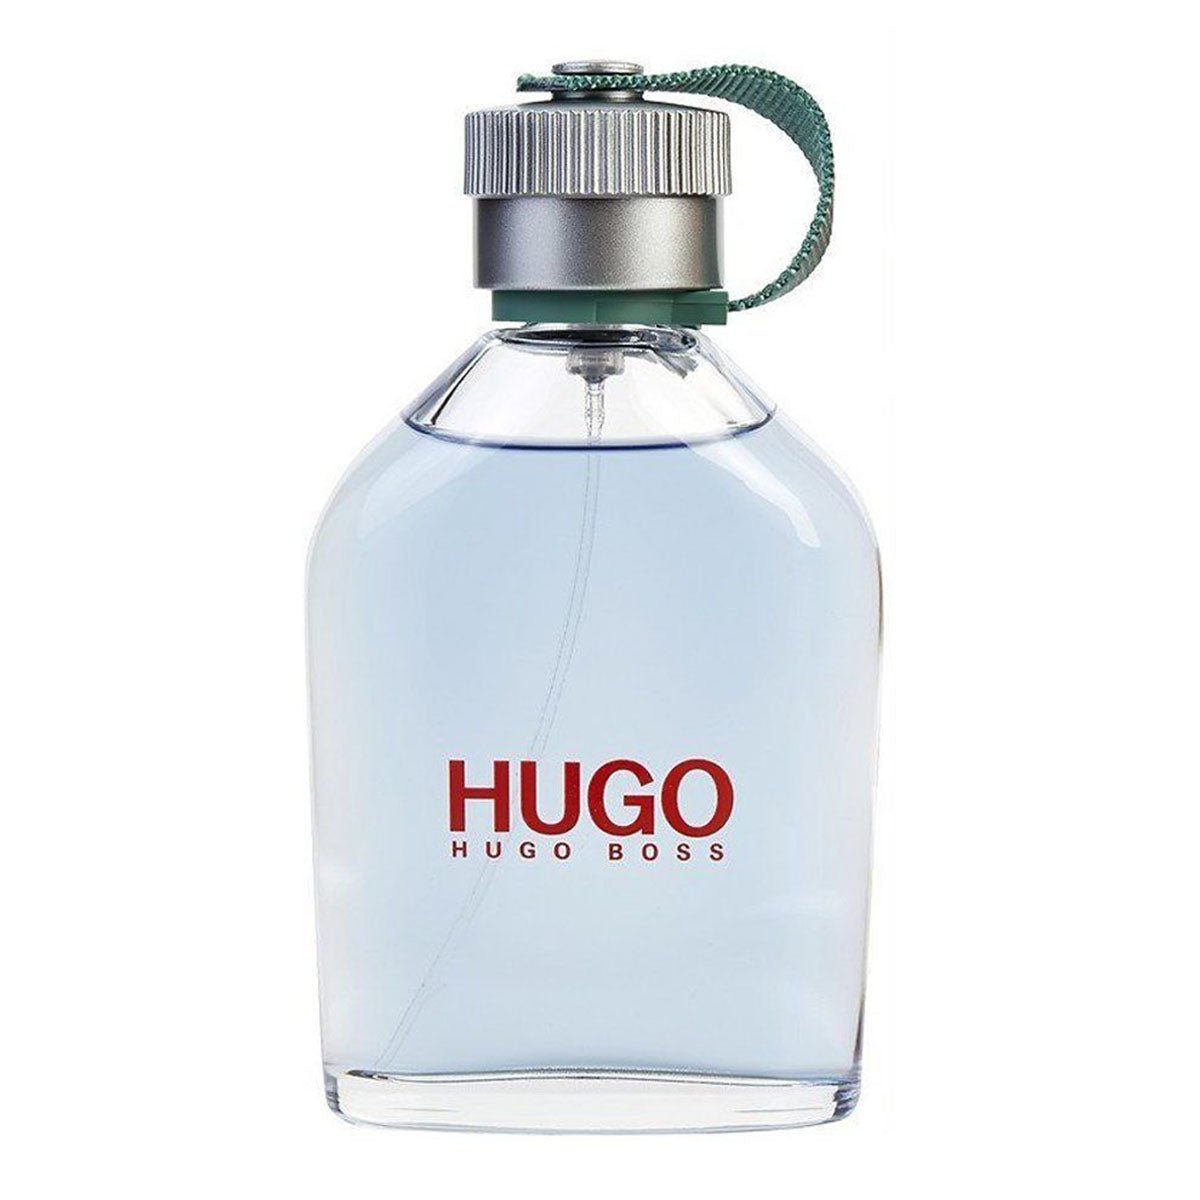 Hugo Boss Man Edt 125ml-Perfume - AllurebeautypkHugo Boss Man Edt 125ml-Perfume